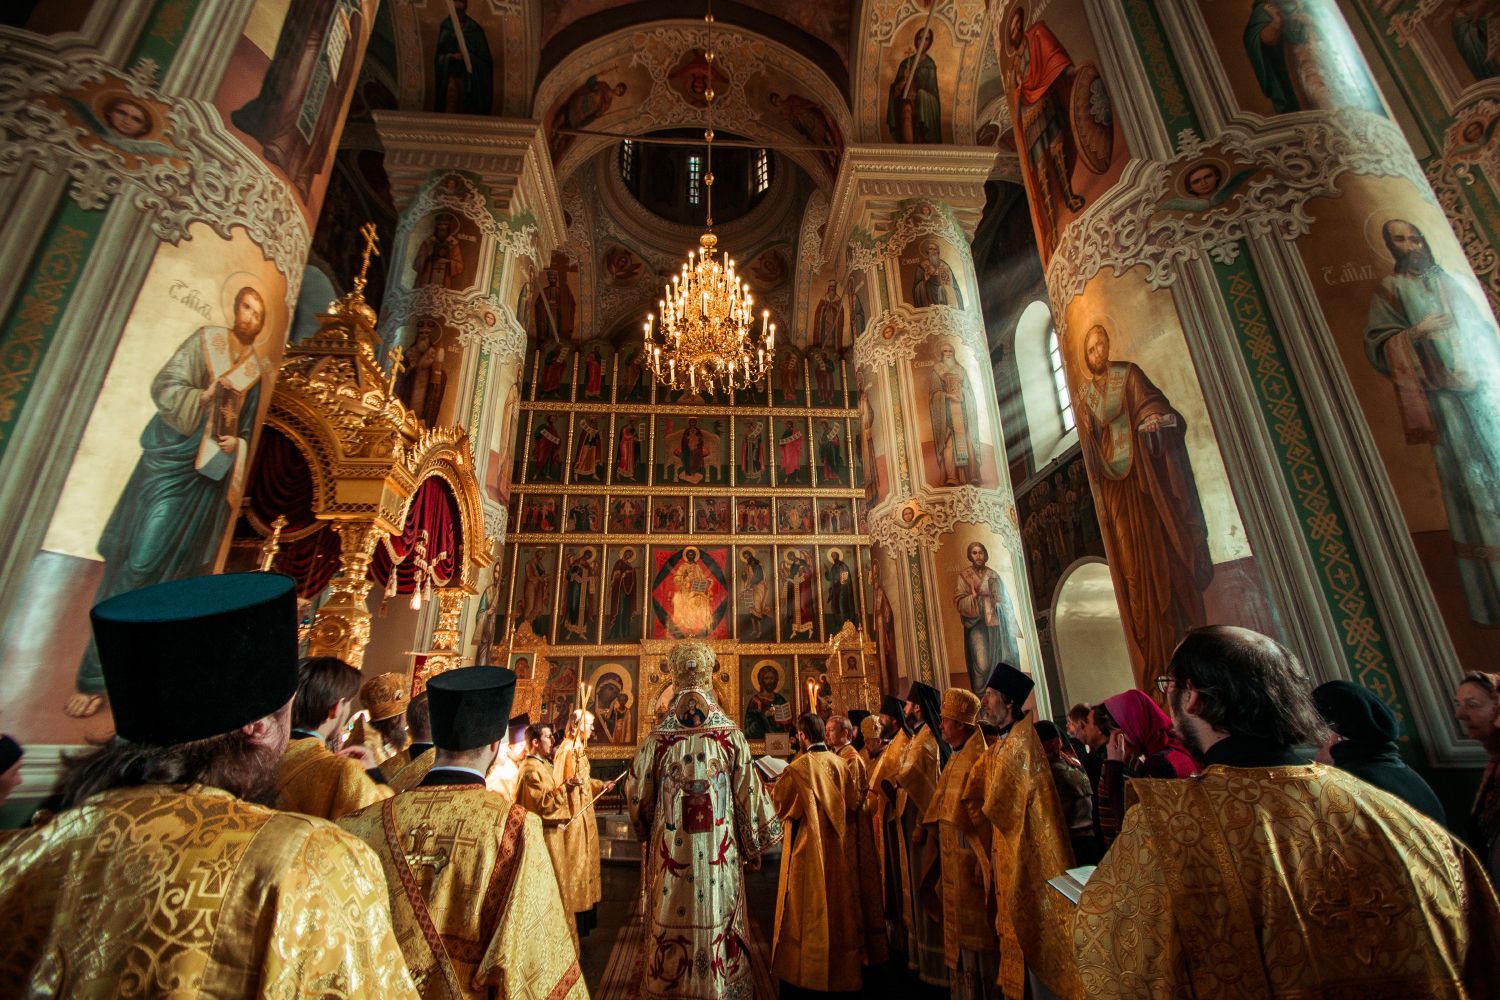 Портал православной веры